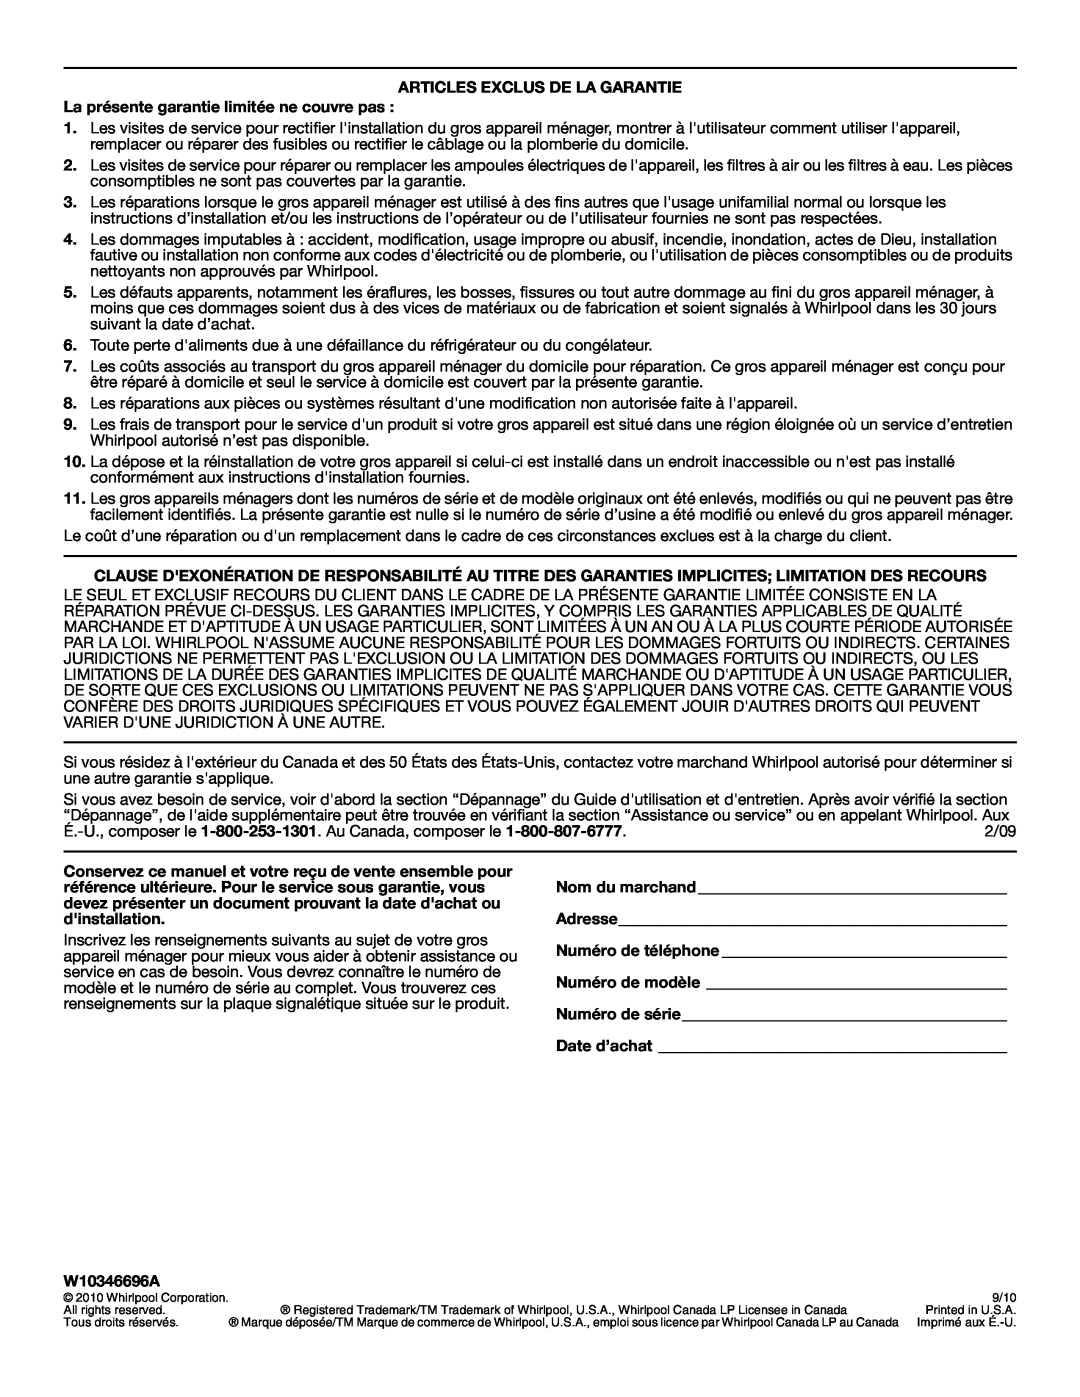 Whirlpool G9CE3065XB manual Articles Exclus De La Garantie, La présente garantie limitée ne couvre pas, W10346696A 